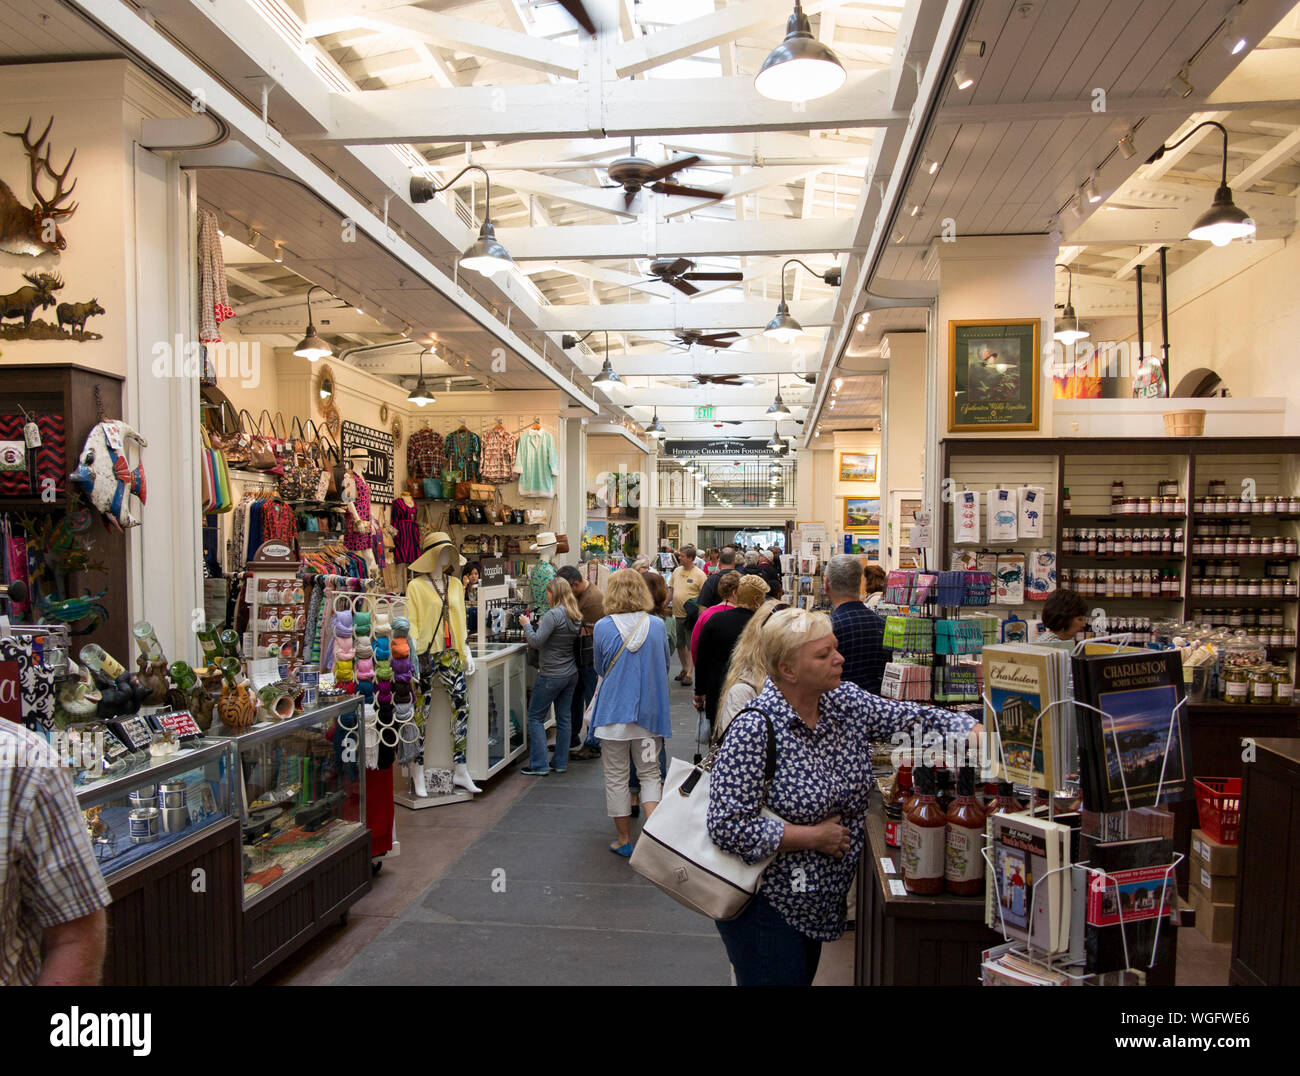 CHARLESTON, CAROLINE DU SUD-AVRIL 12, 2016 : Shoppers affluent à l'ancien marché aux esclaves qui s'est transformée dans l'âge moderne d'espace de vente au détail dans la région de Charle Banque D'Images